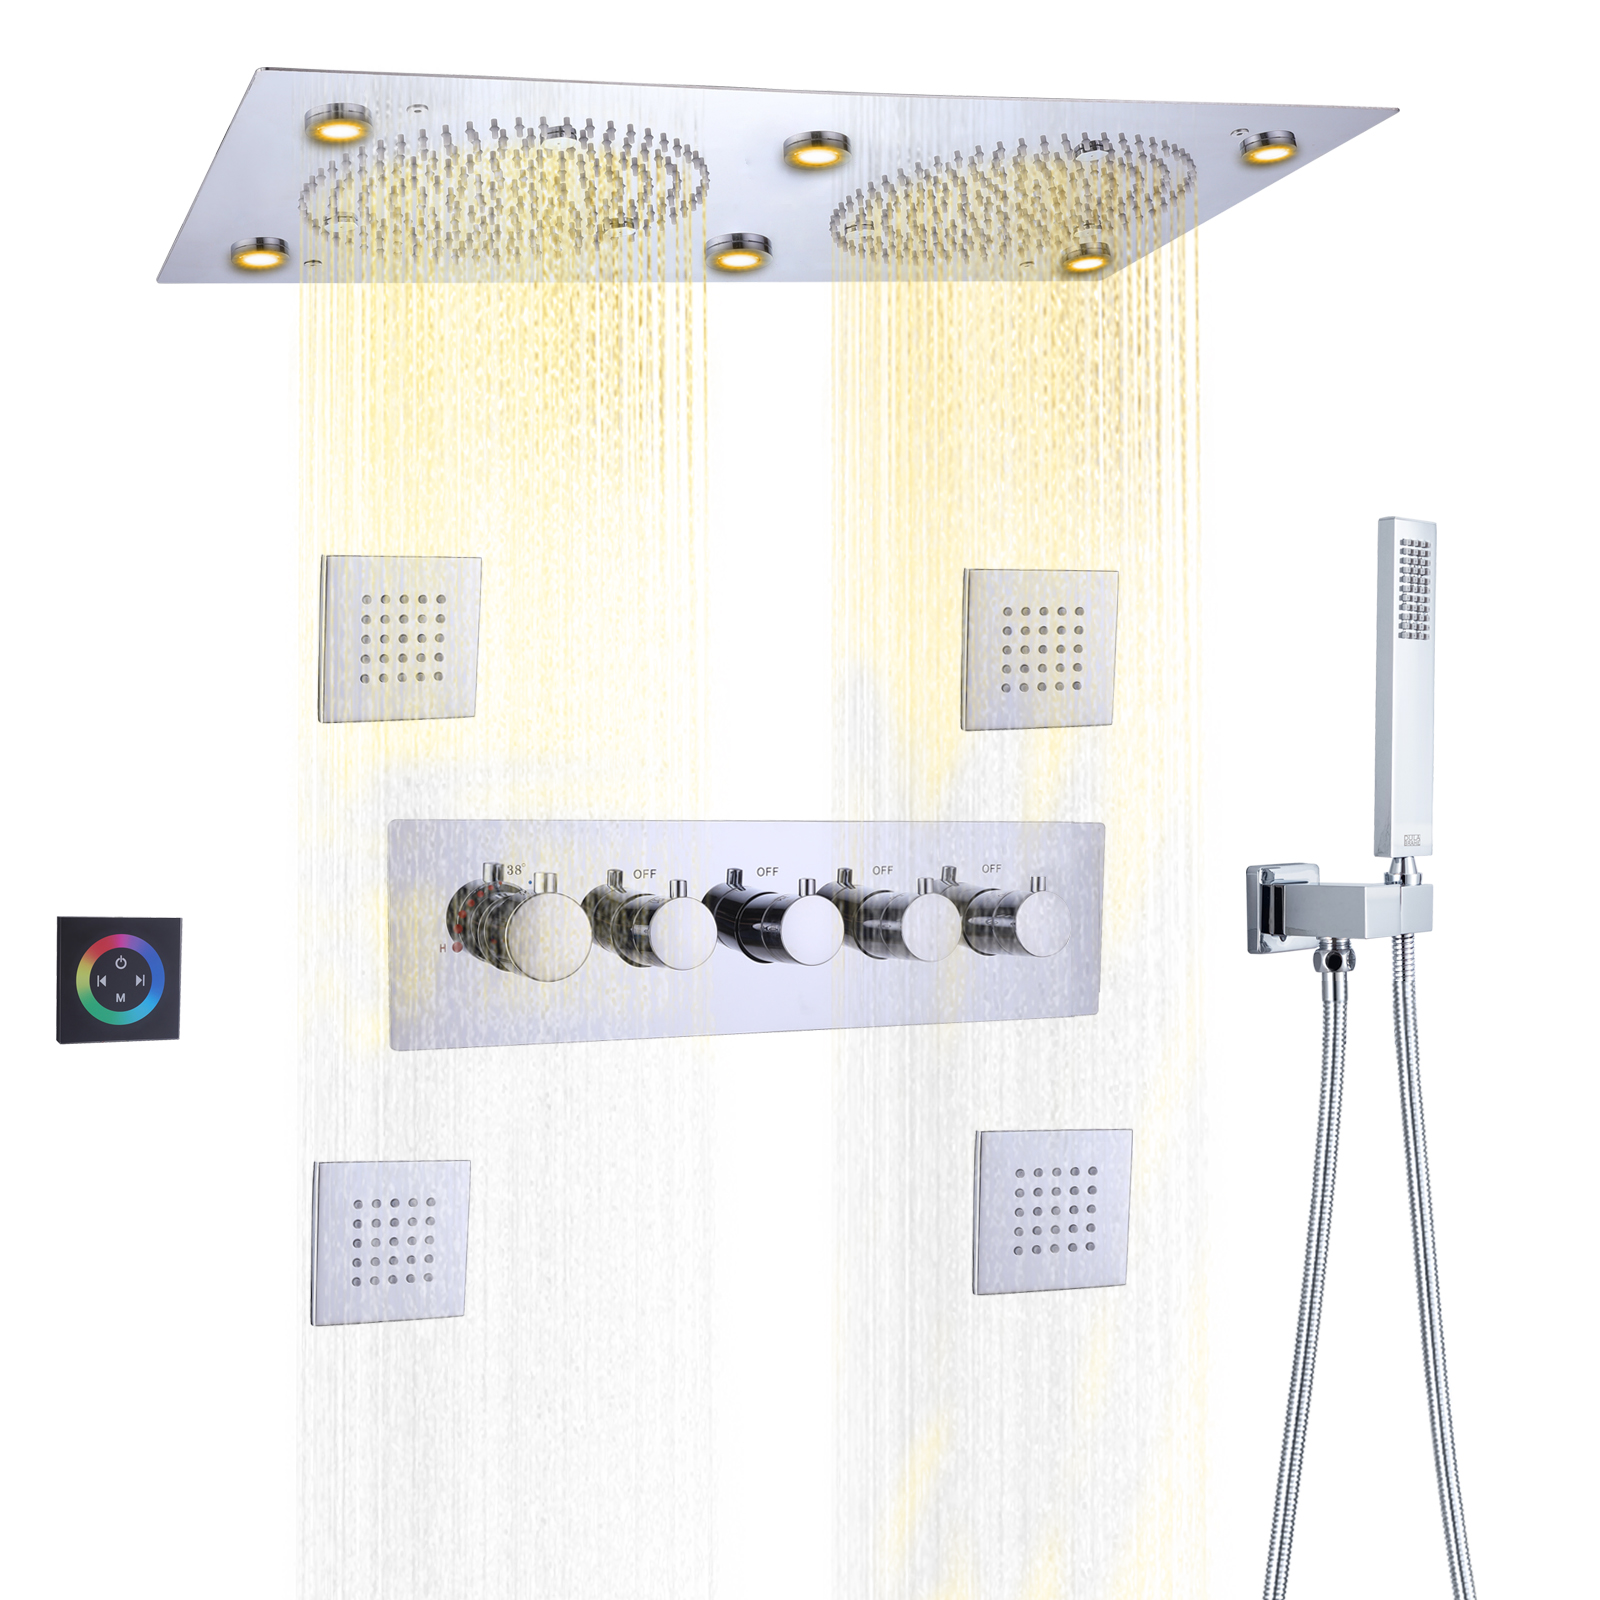 Sistema de ducha oculto tipo lluvia pulido cromado termostático con juego de ducha de mano de calidad